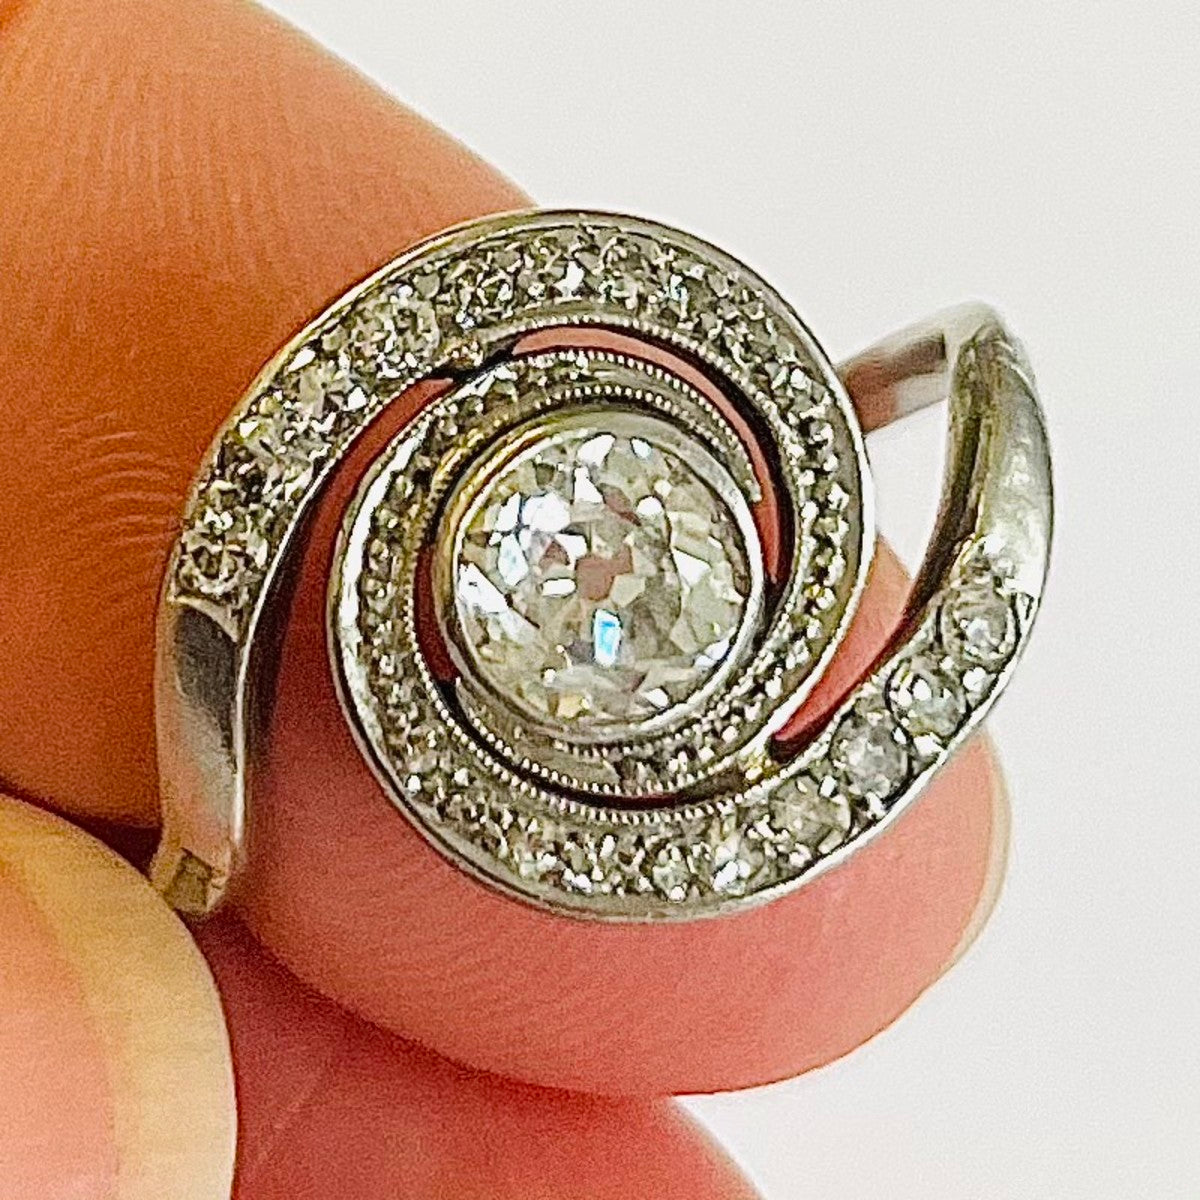 1940s 14KT White Gold Diamond Ring in hand